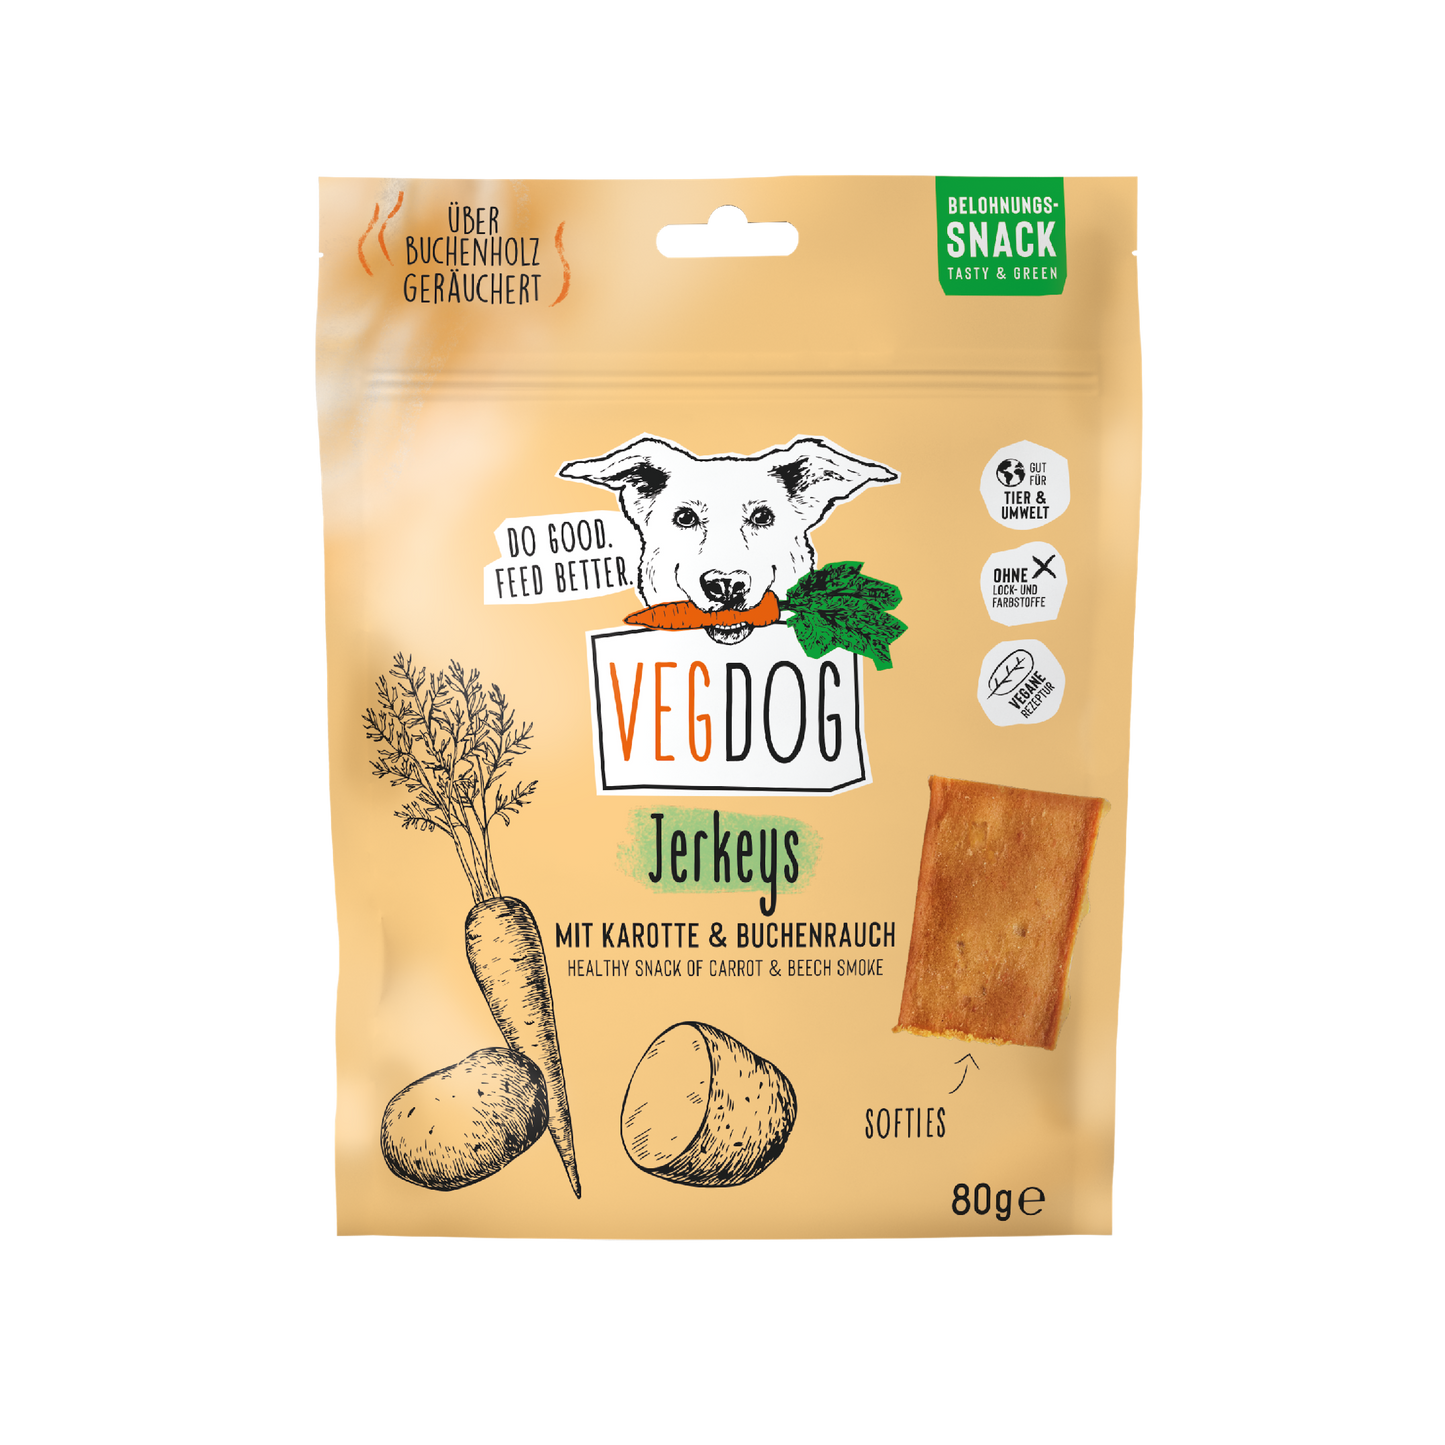 VEGDOG Hundeleckerlies "Jerkeys" mit Karotte & Buchenrauch - 80g | vegan